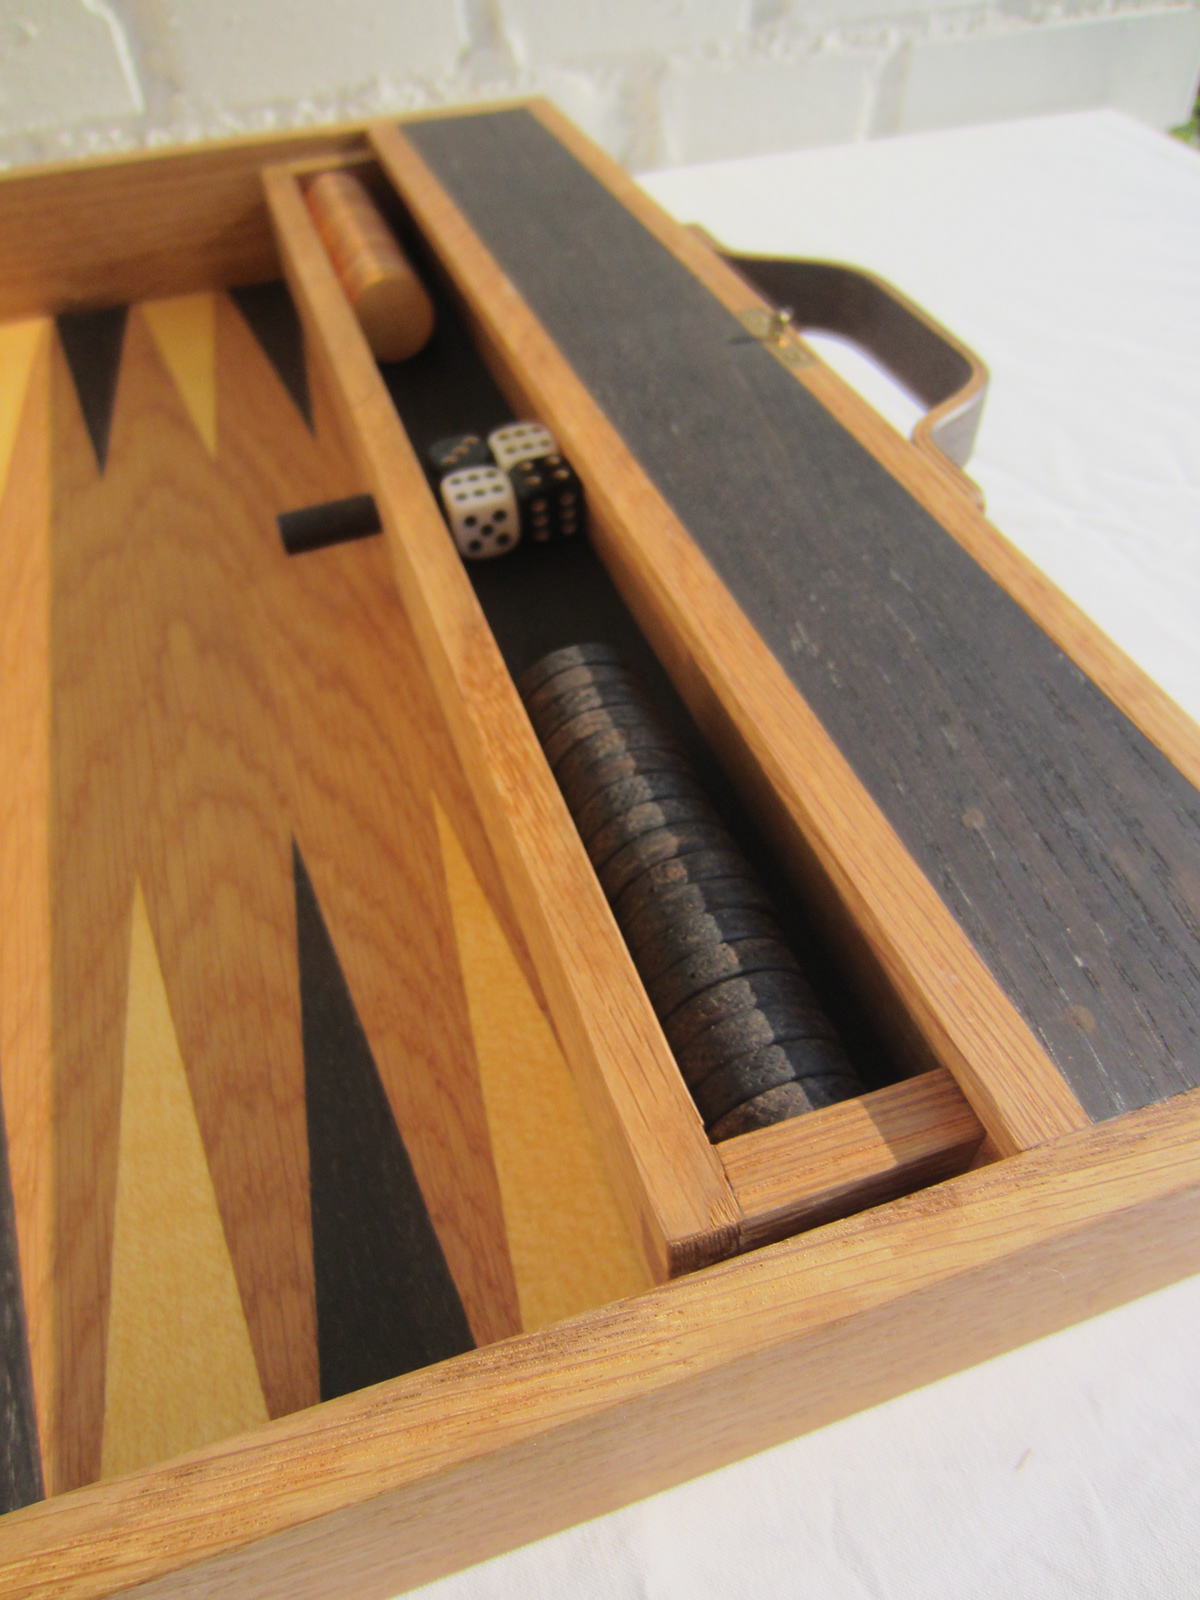 #backgammon #backgammonboard #brasslock #handmade #inlays #intarsia #oak #scandinaviandesign #Veneermoulding #woodwork